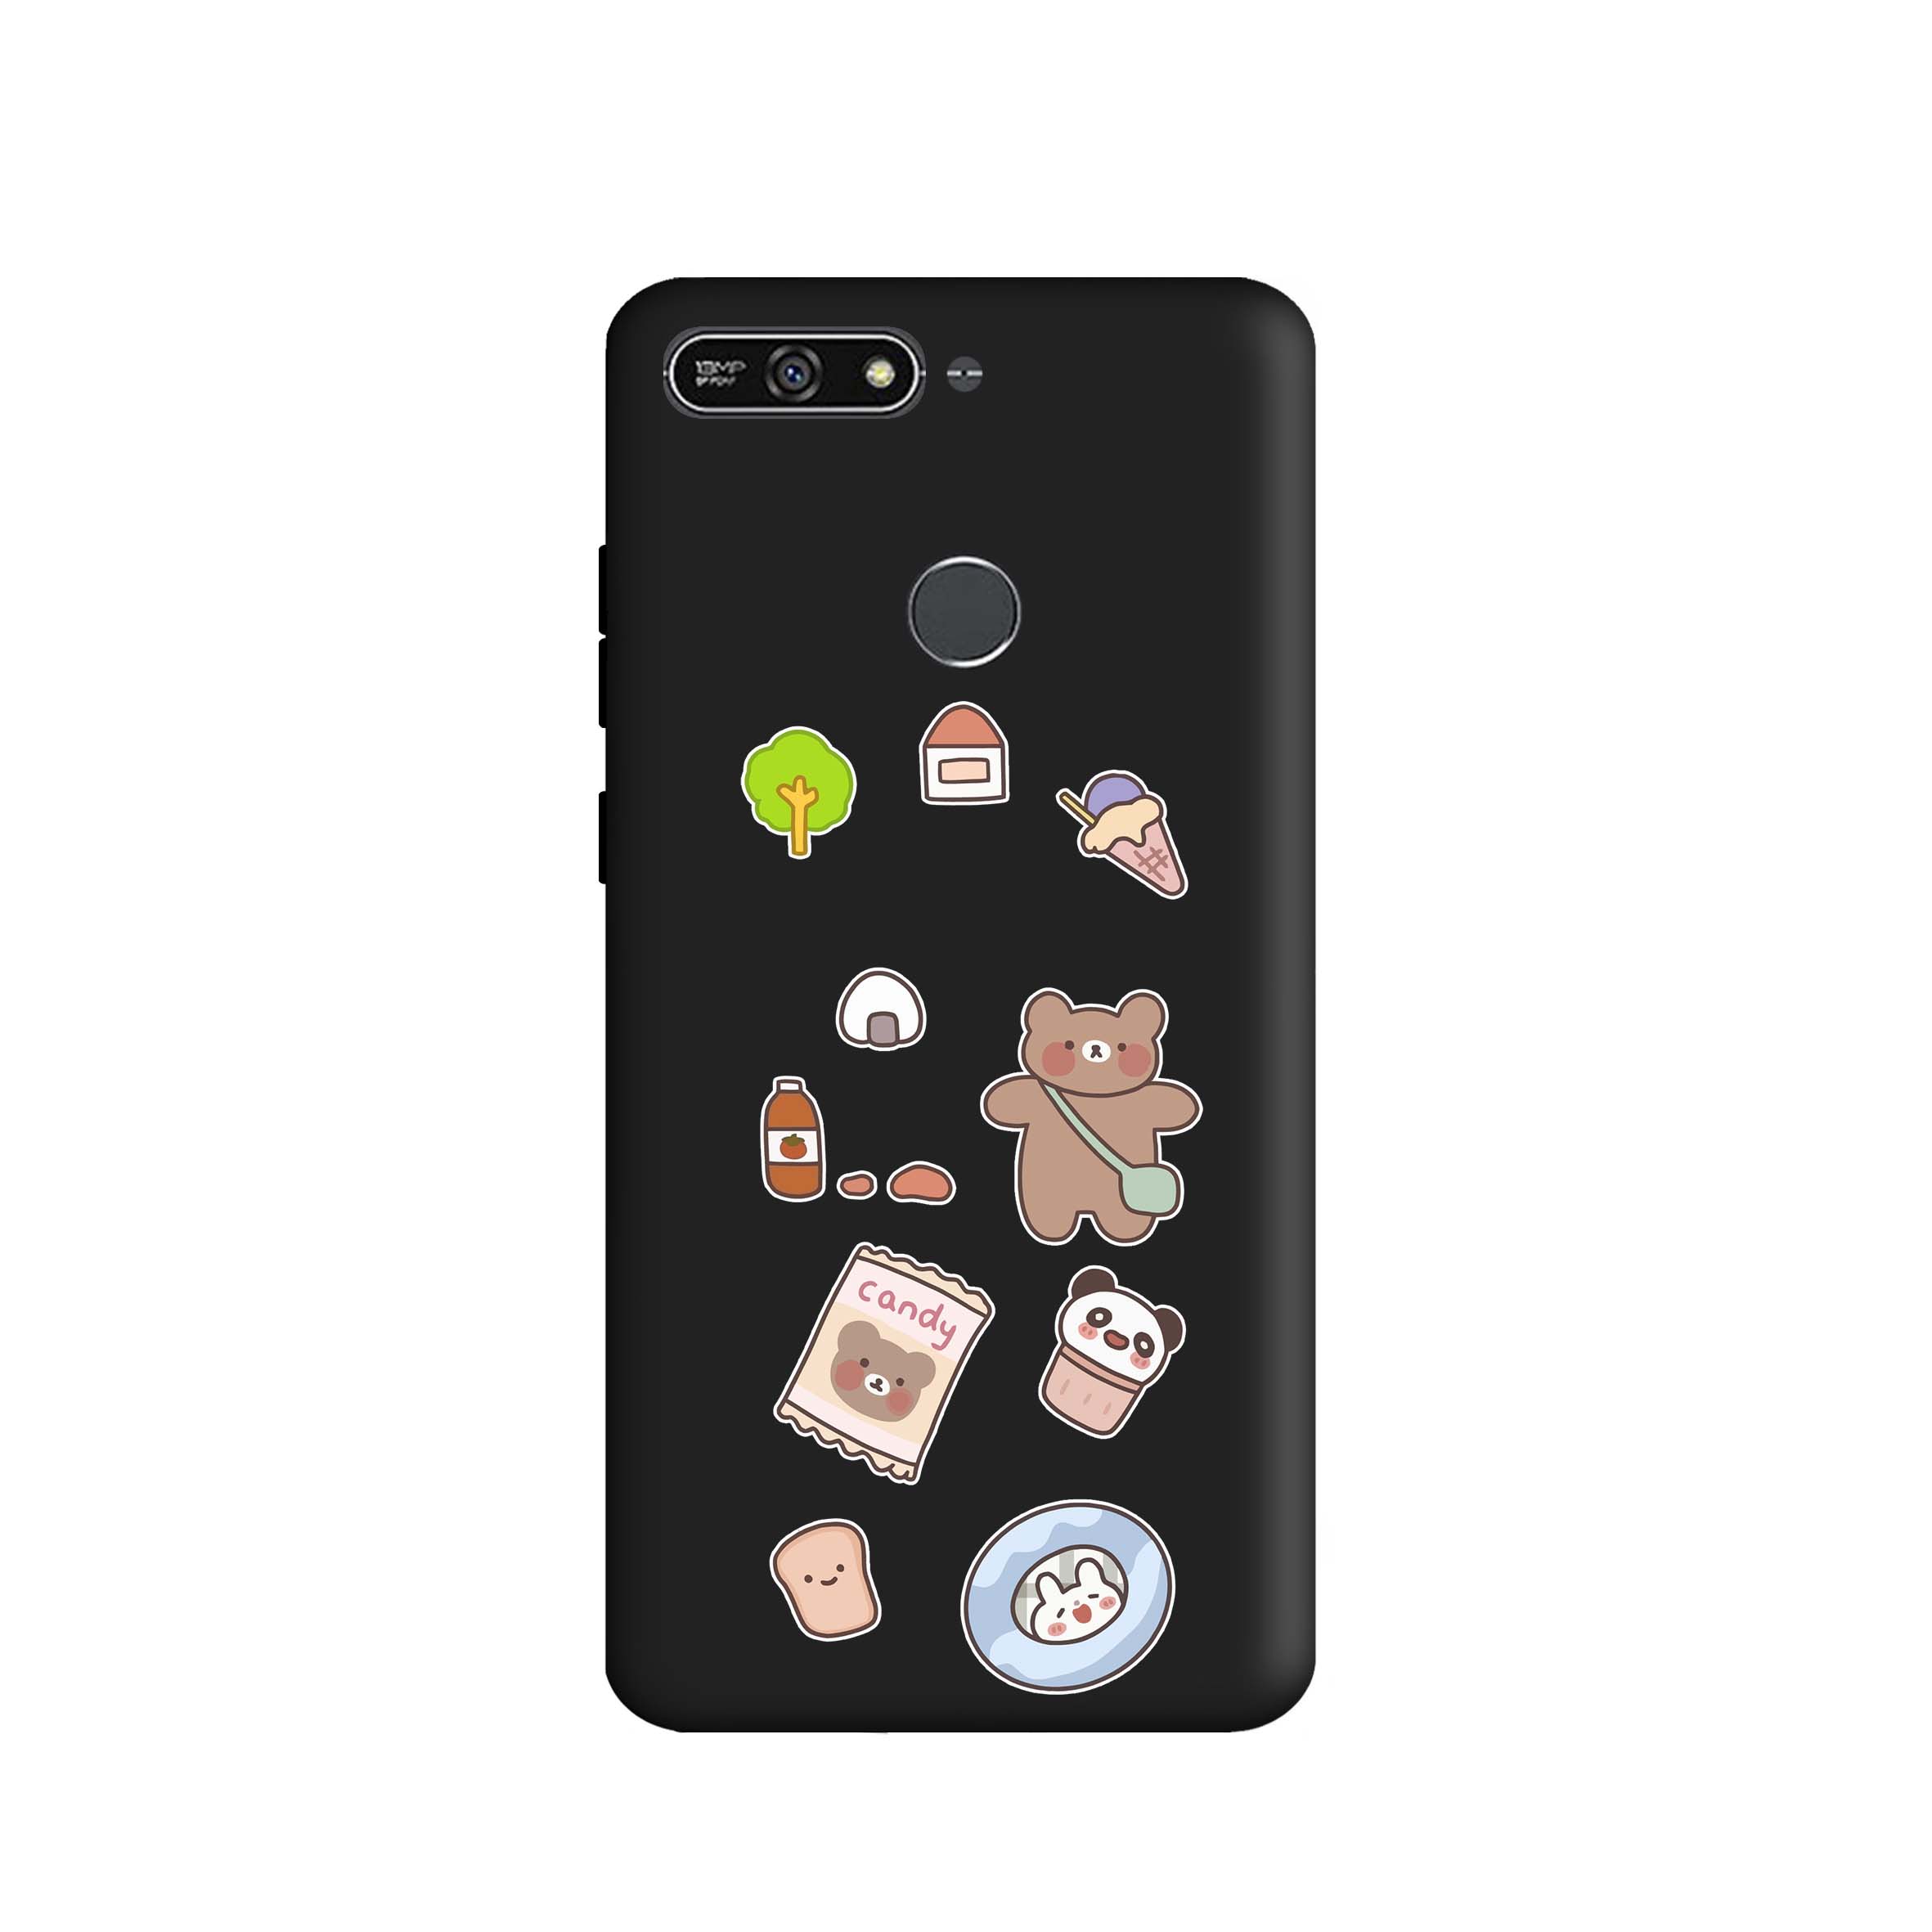 کاور طرح خرس شکلاتی کد m3929 مناسب برای گوشی موبایل هوآوی Y6 2018